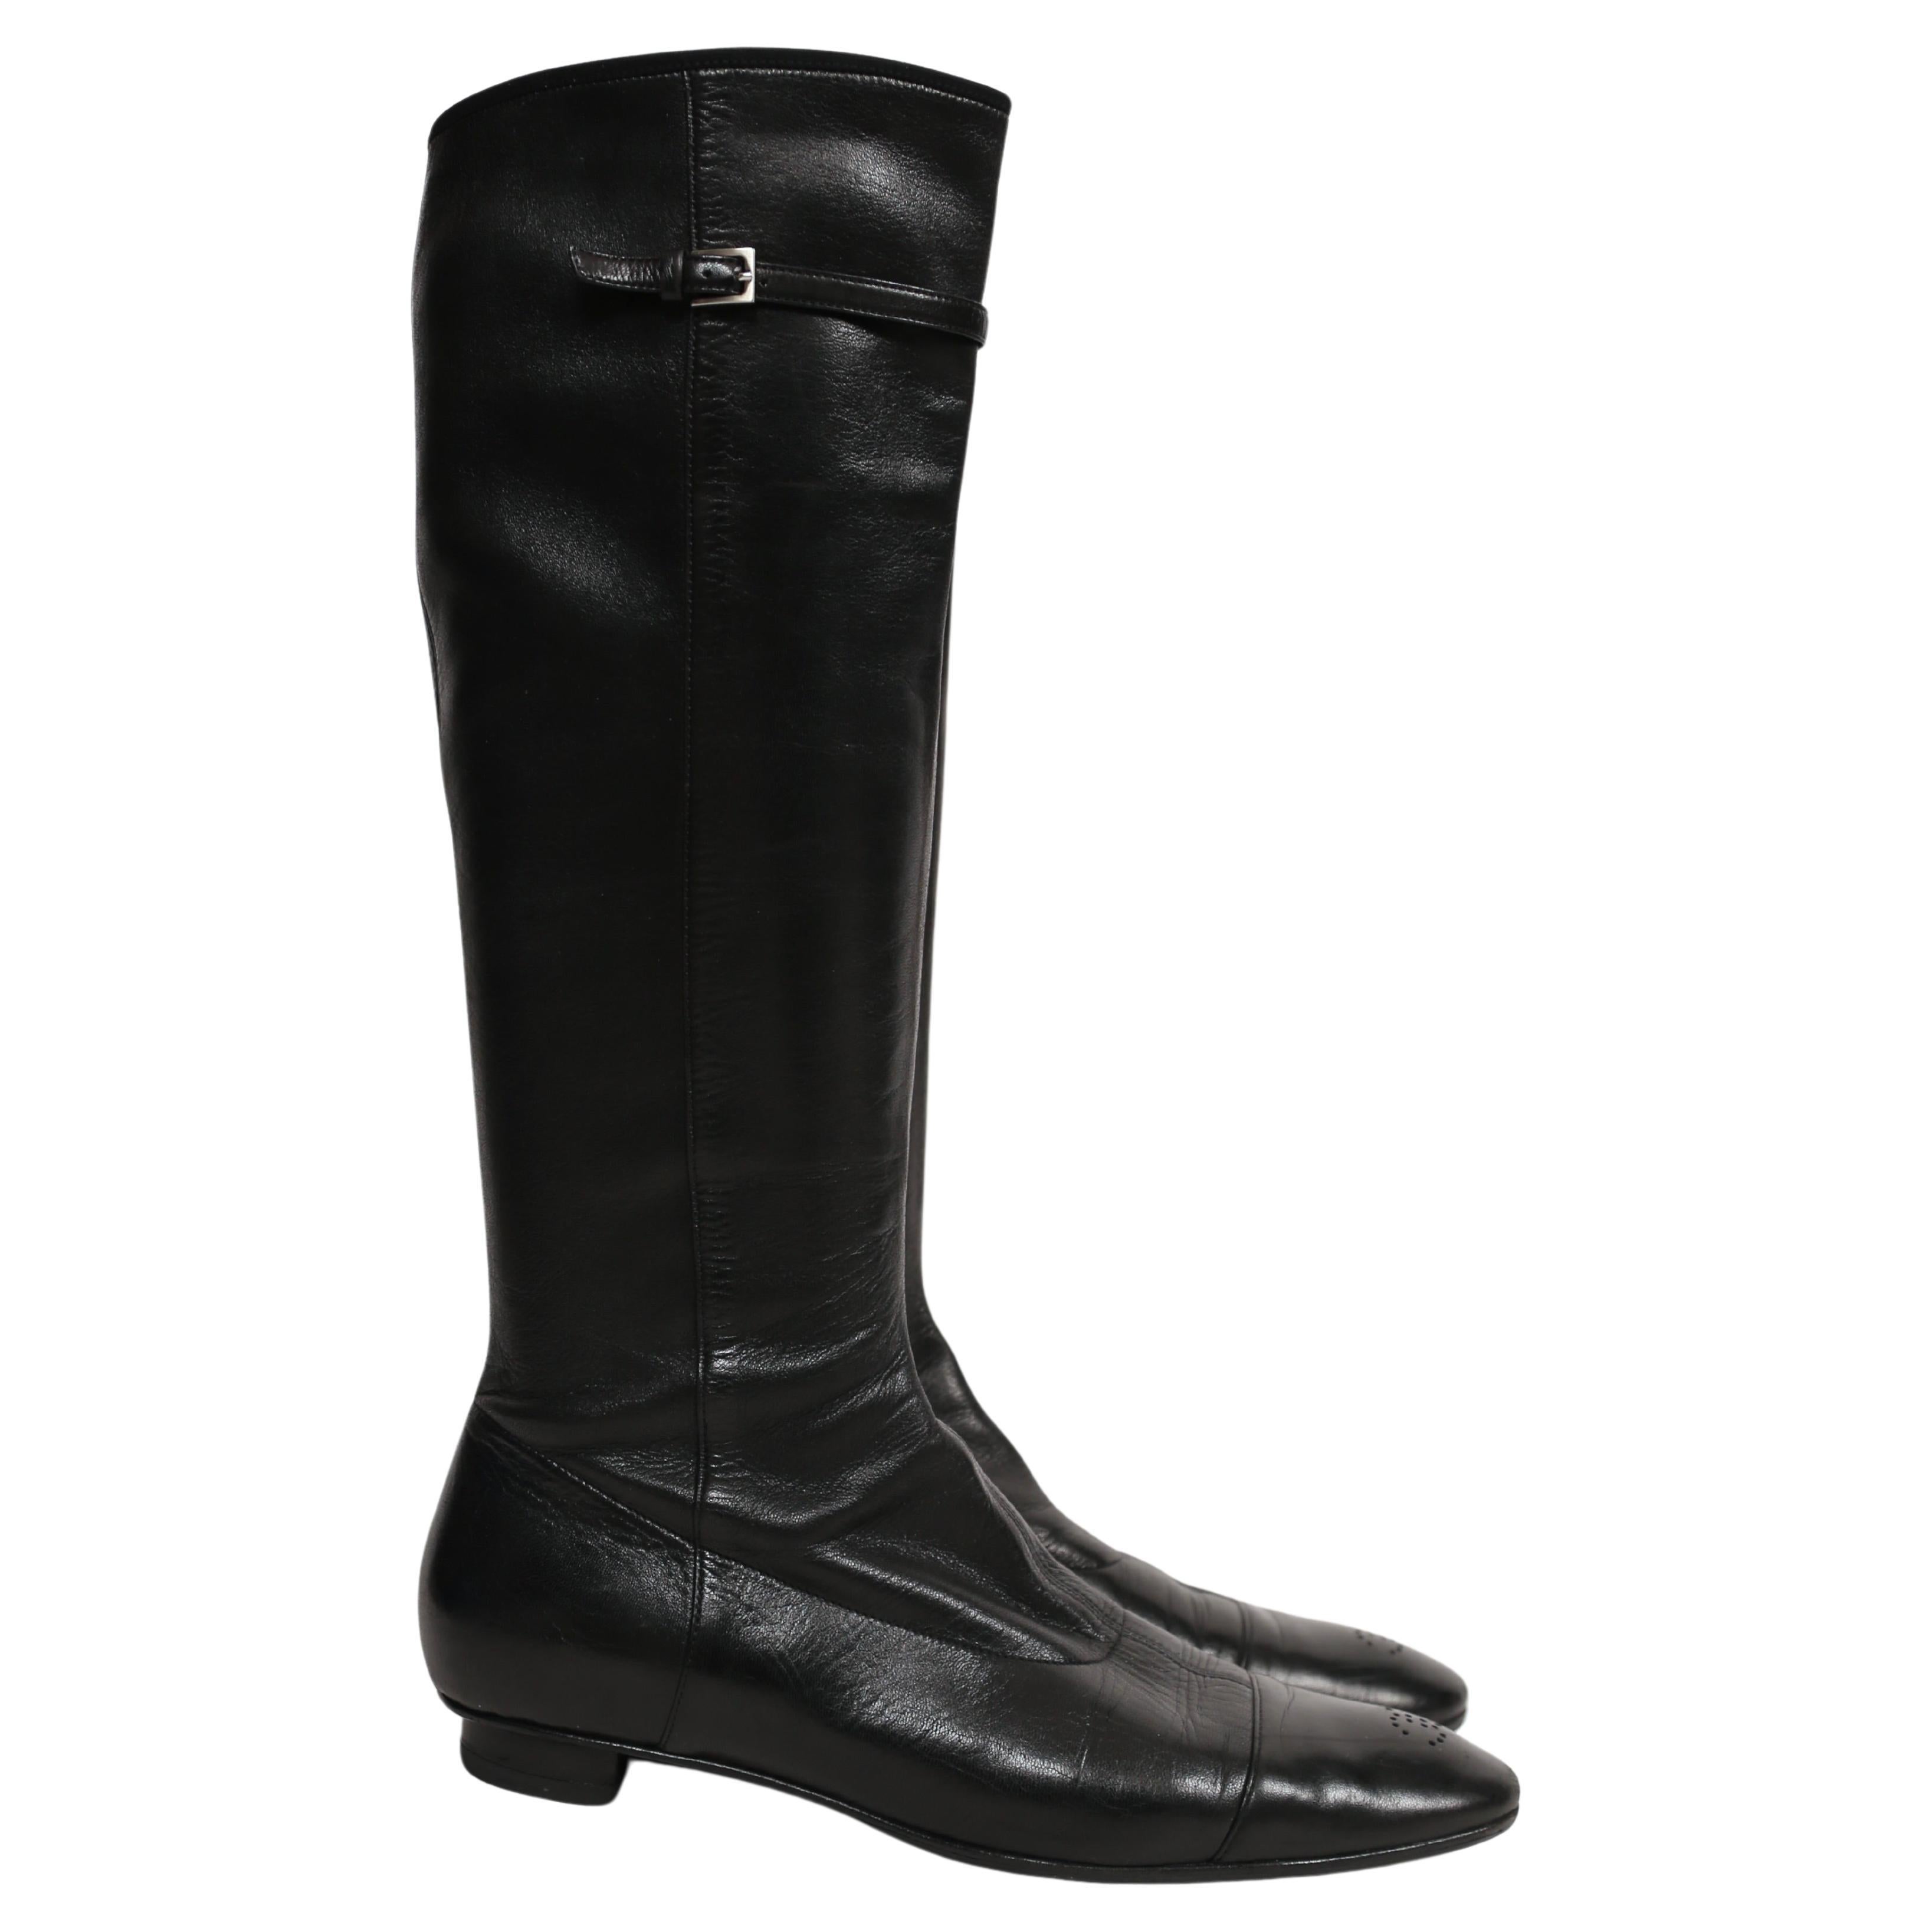 Schwarze Stretch-Lederstiefel mit CC-Detail an den Zehen, entworfen von Chanel aus den späten 1990er, frühen 2000er Jahren. Französisch Größe 39.5 (US 9-9.5).  Besteht vollständig aus Leder. Beim Eintritt ziehen. Schutzsohlen wurden hinzugefügt.